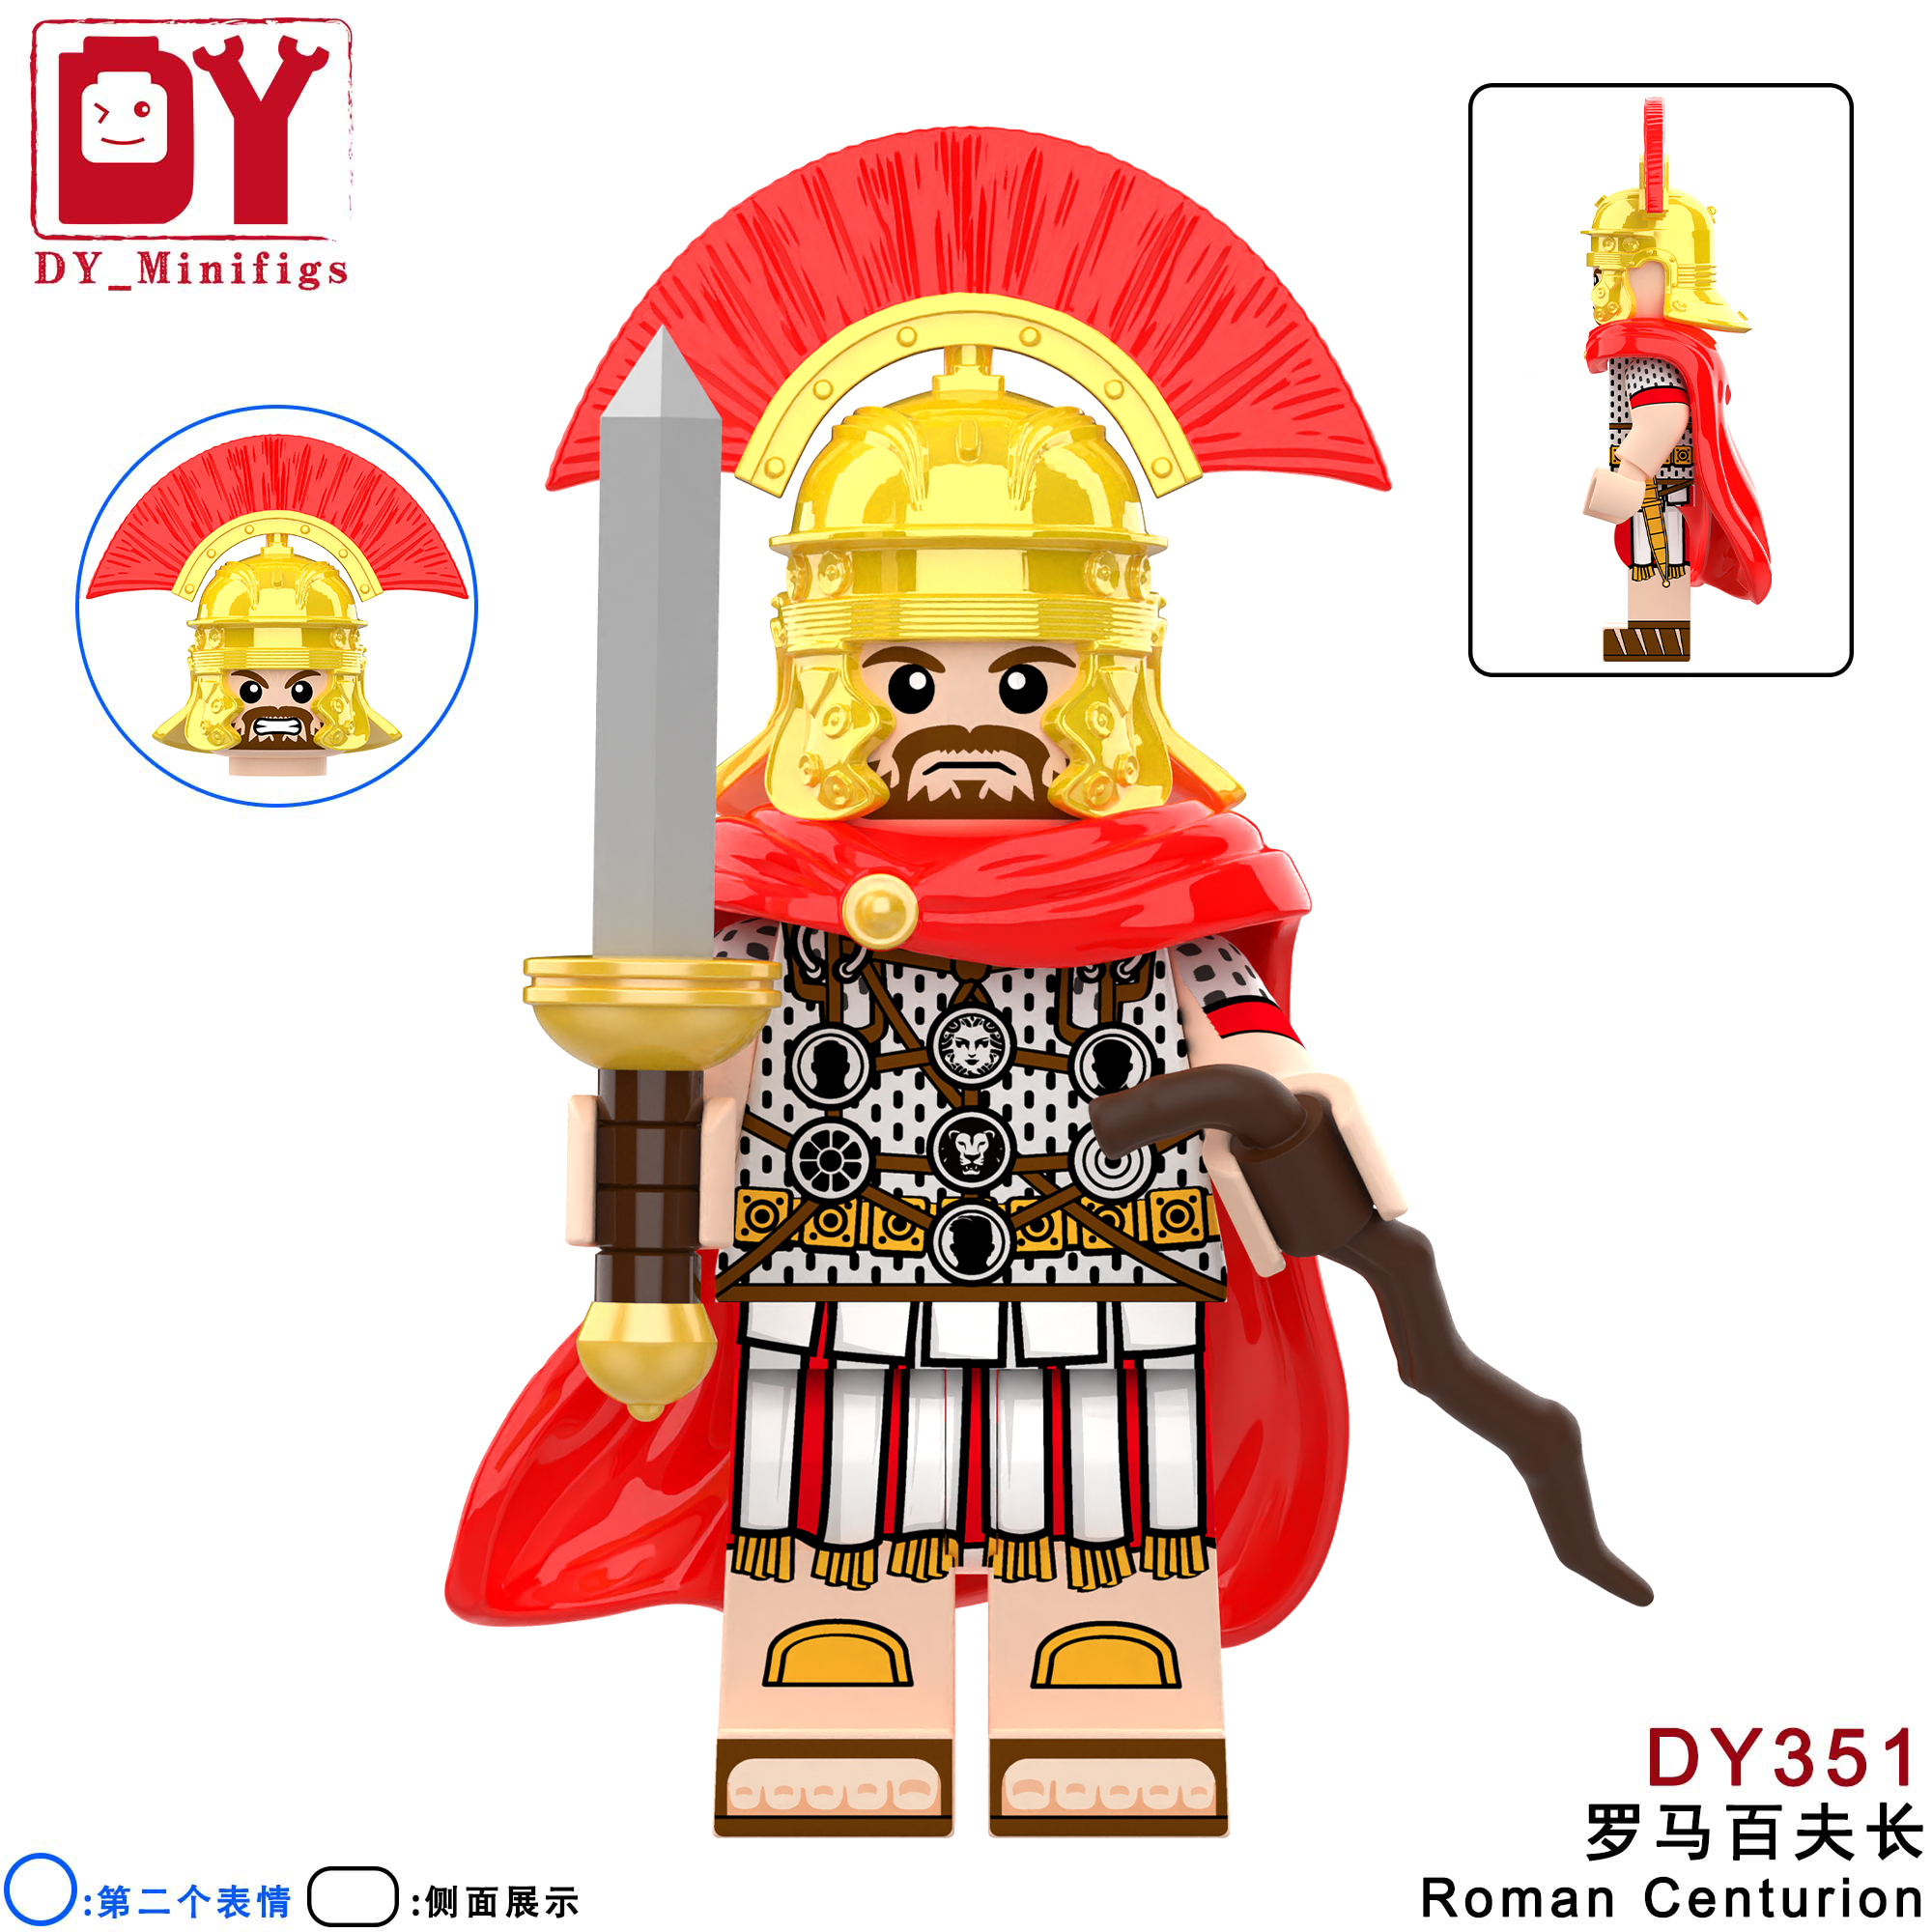 中世纪古代士兵骑士龙国士兵绿龙罗马斯巴达十字军积木人仔玩具